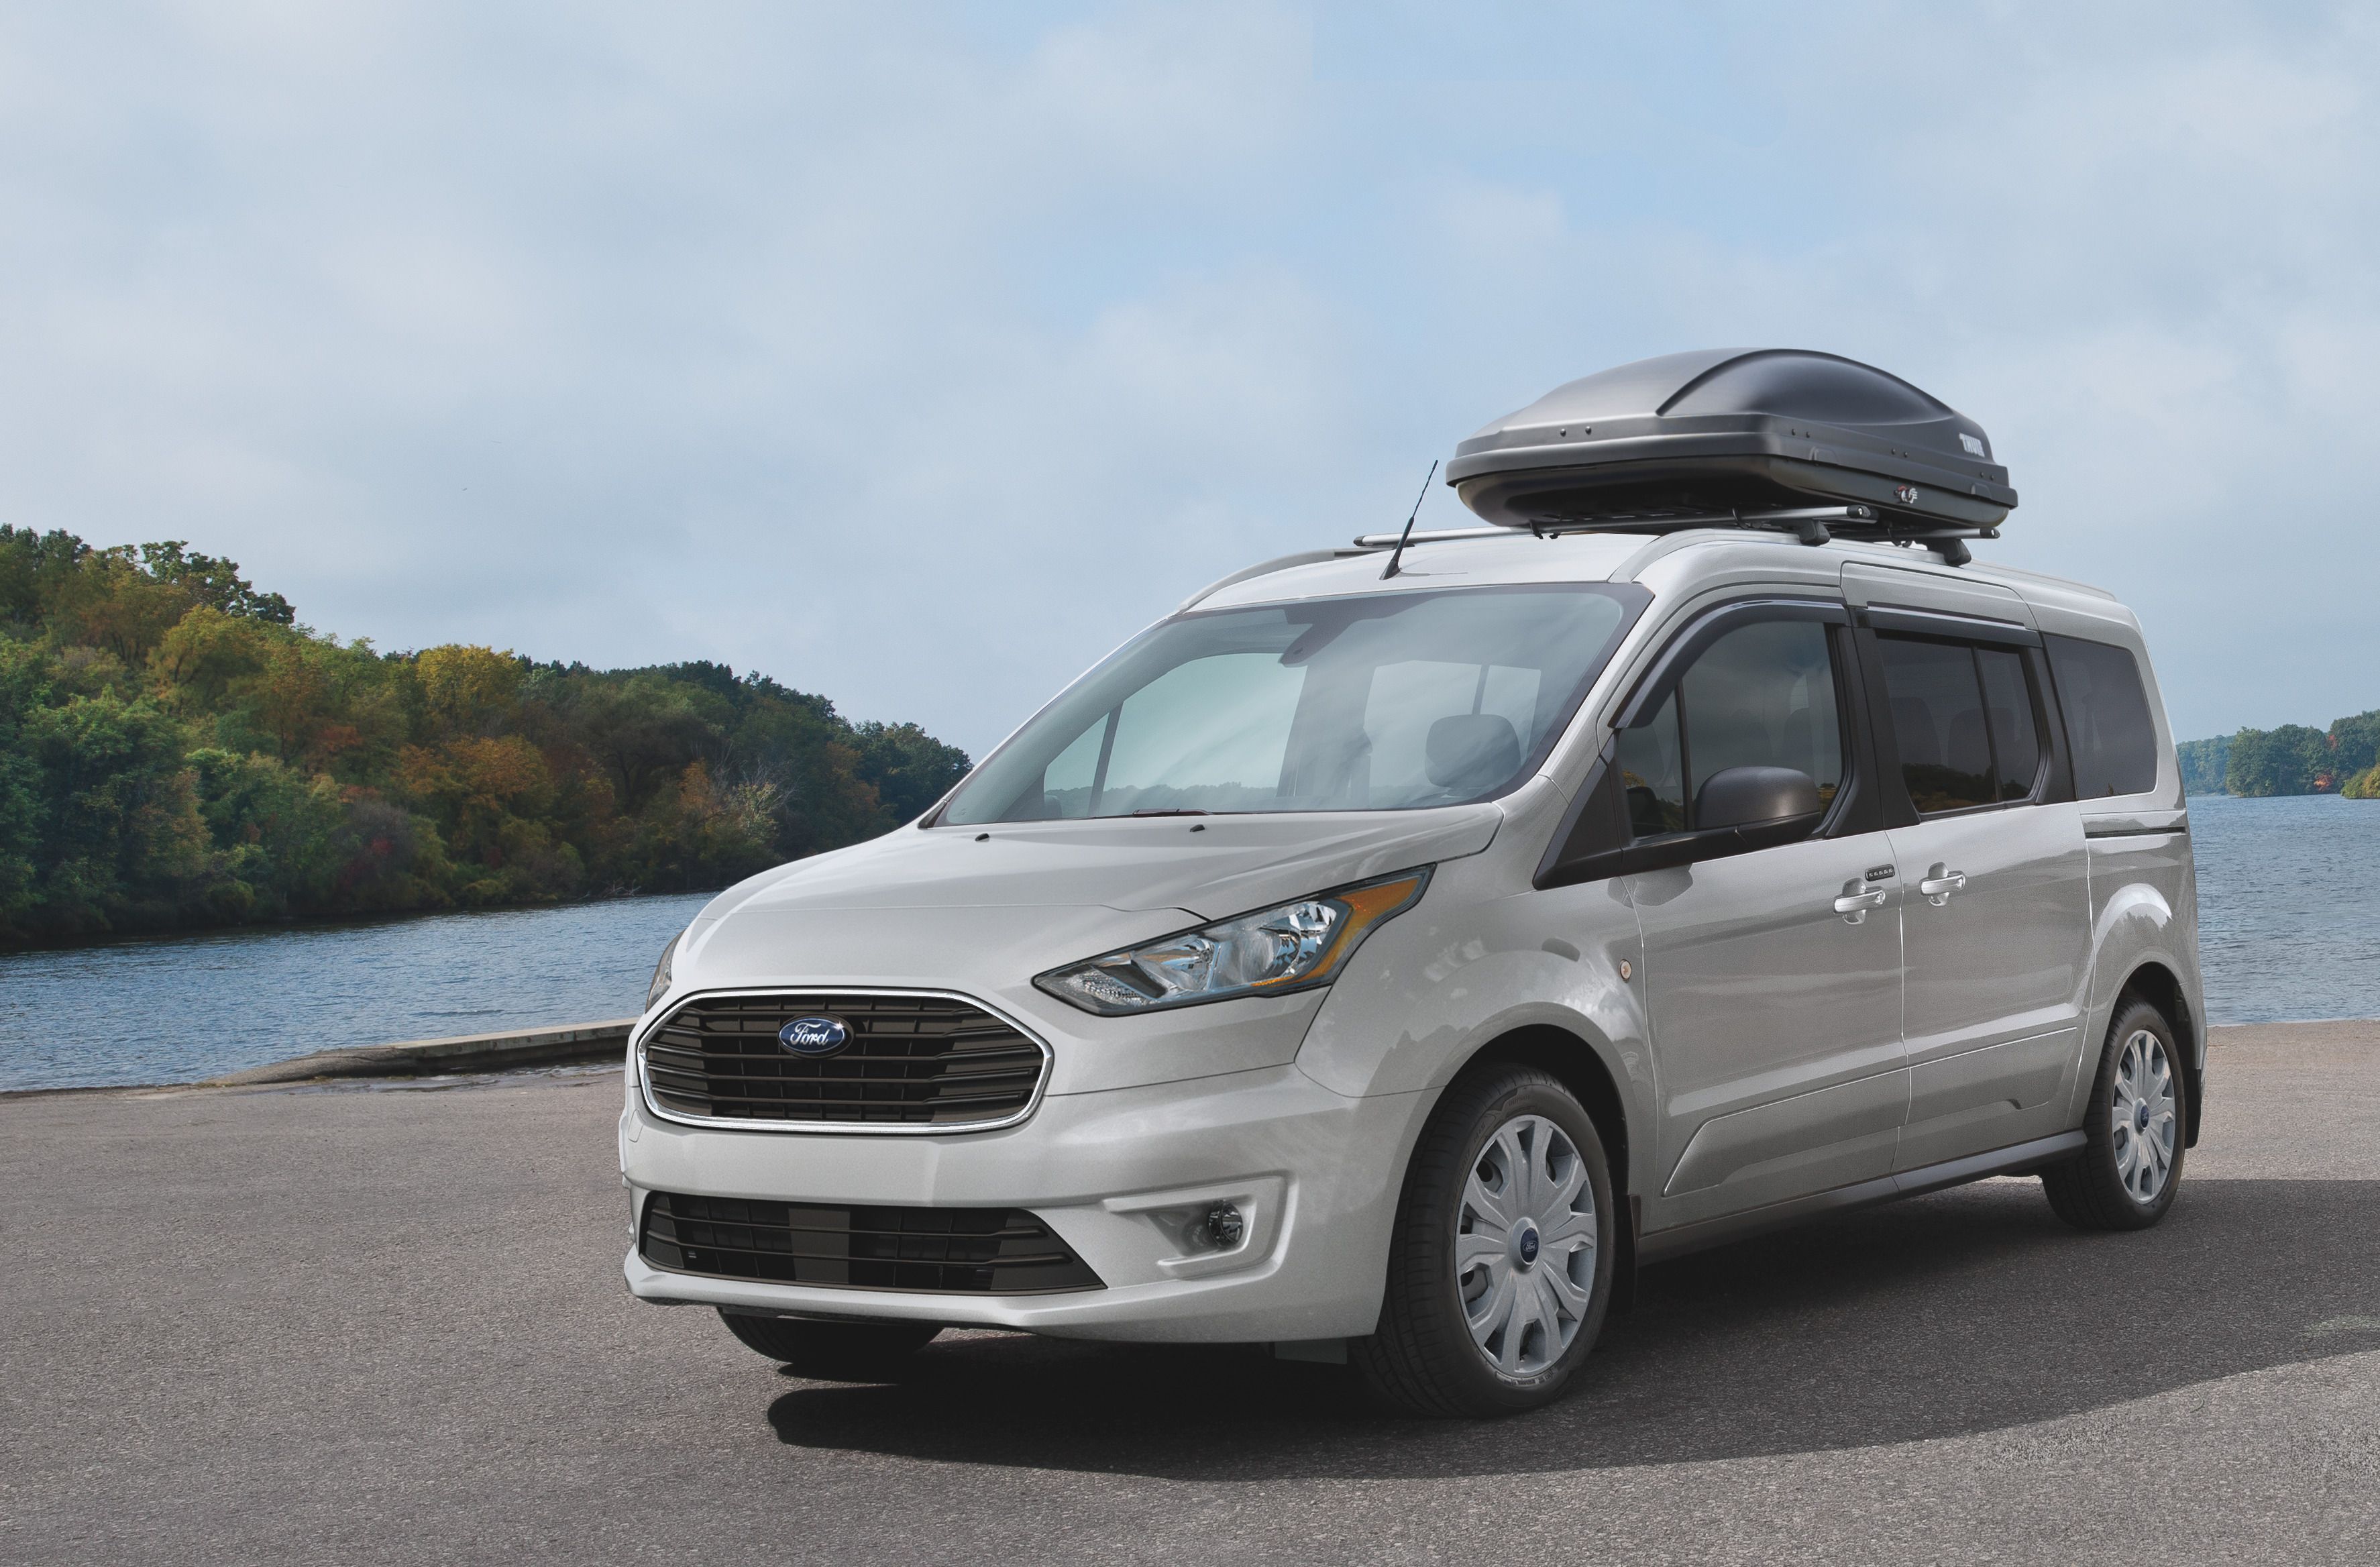 2021 Ford Transit Passenger Van Review & Ratings